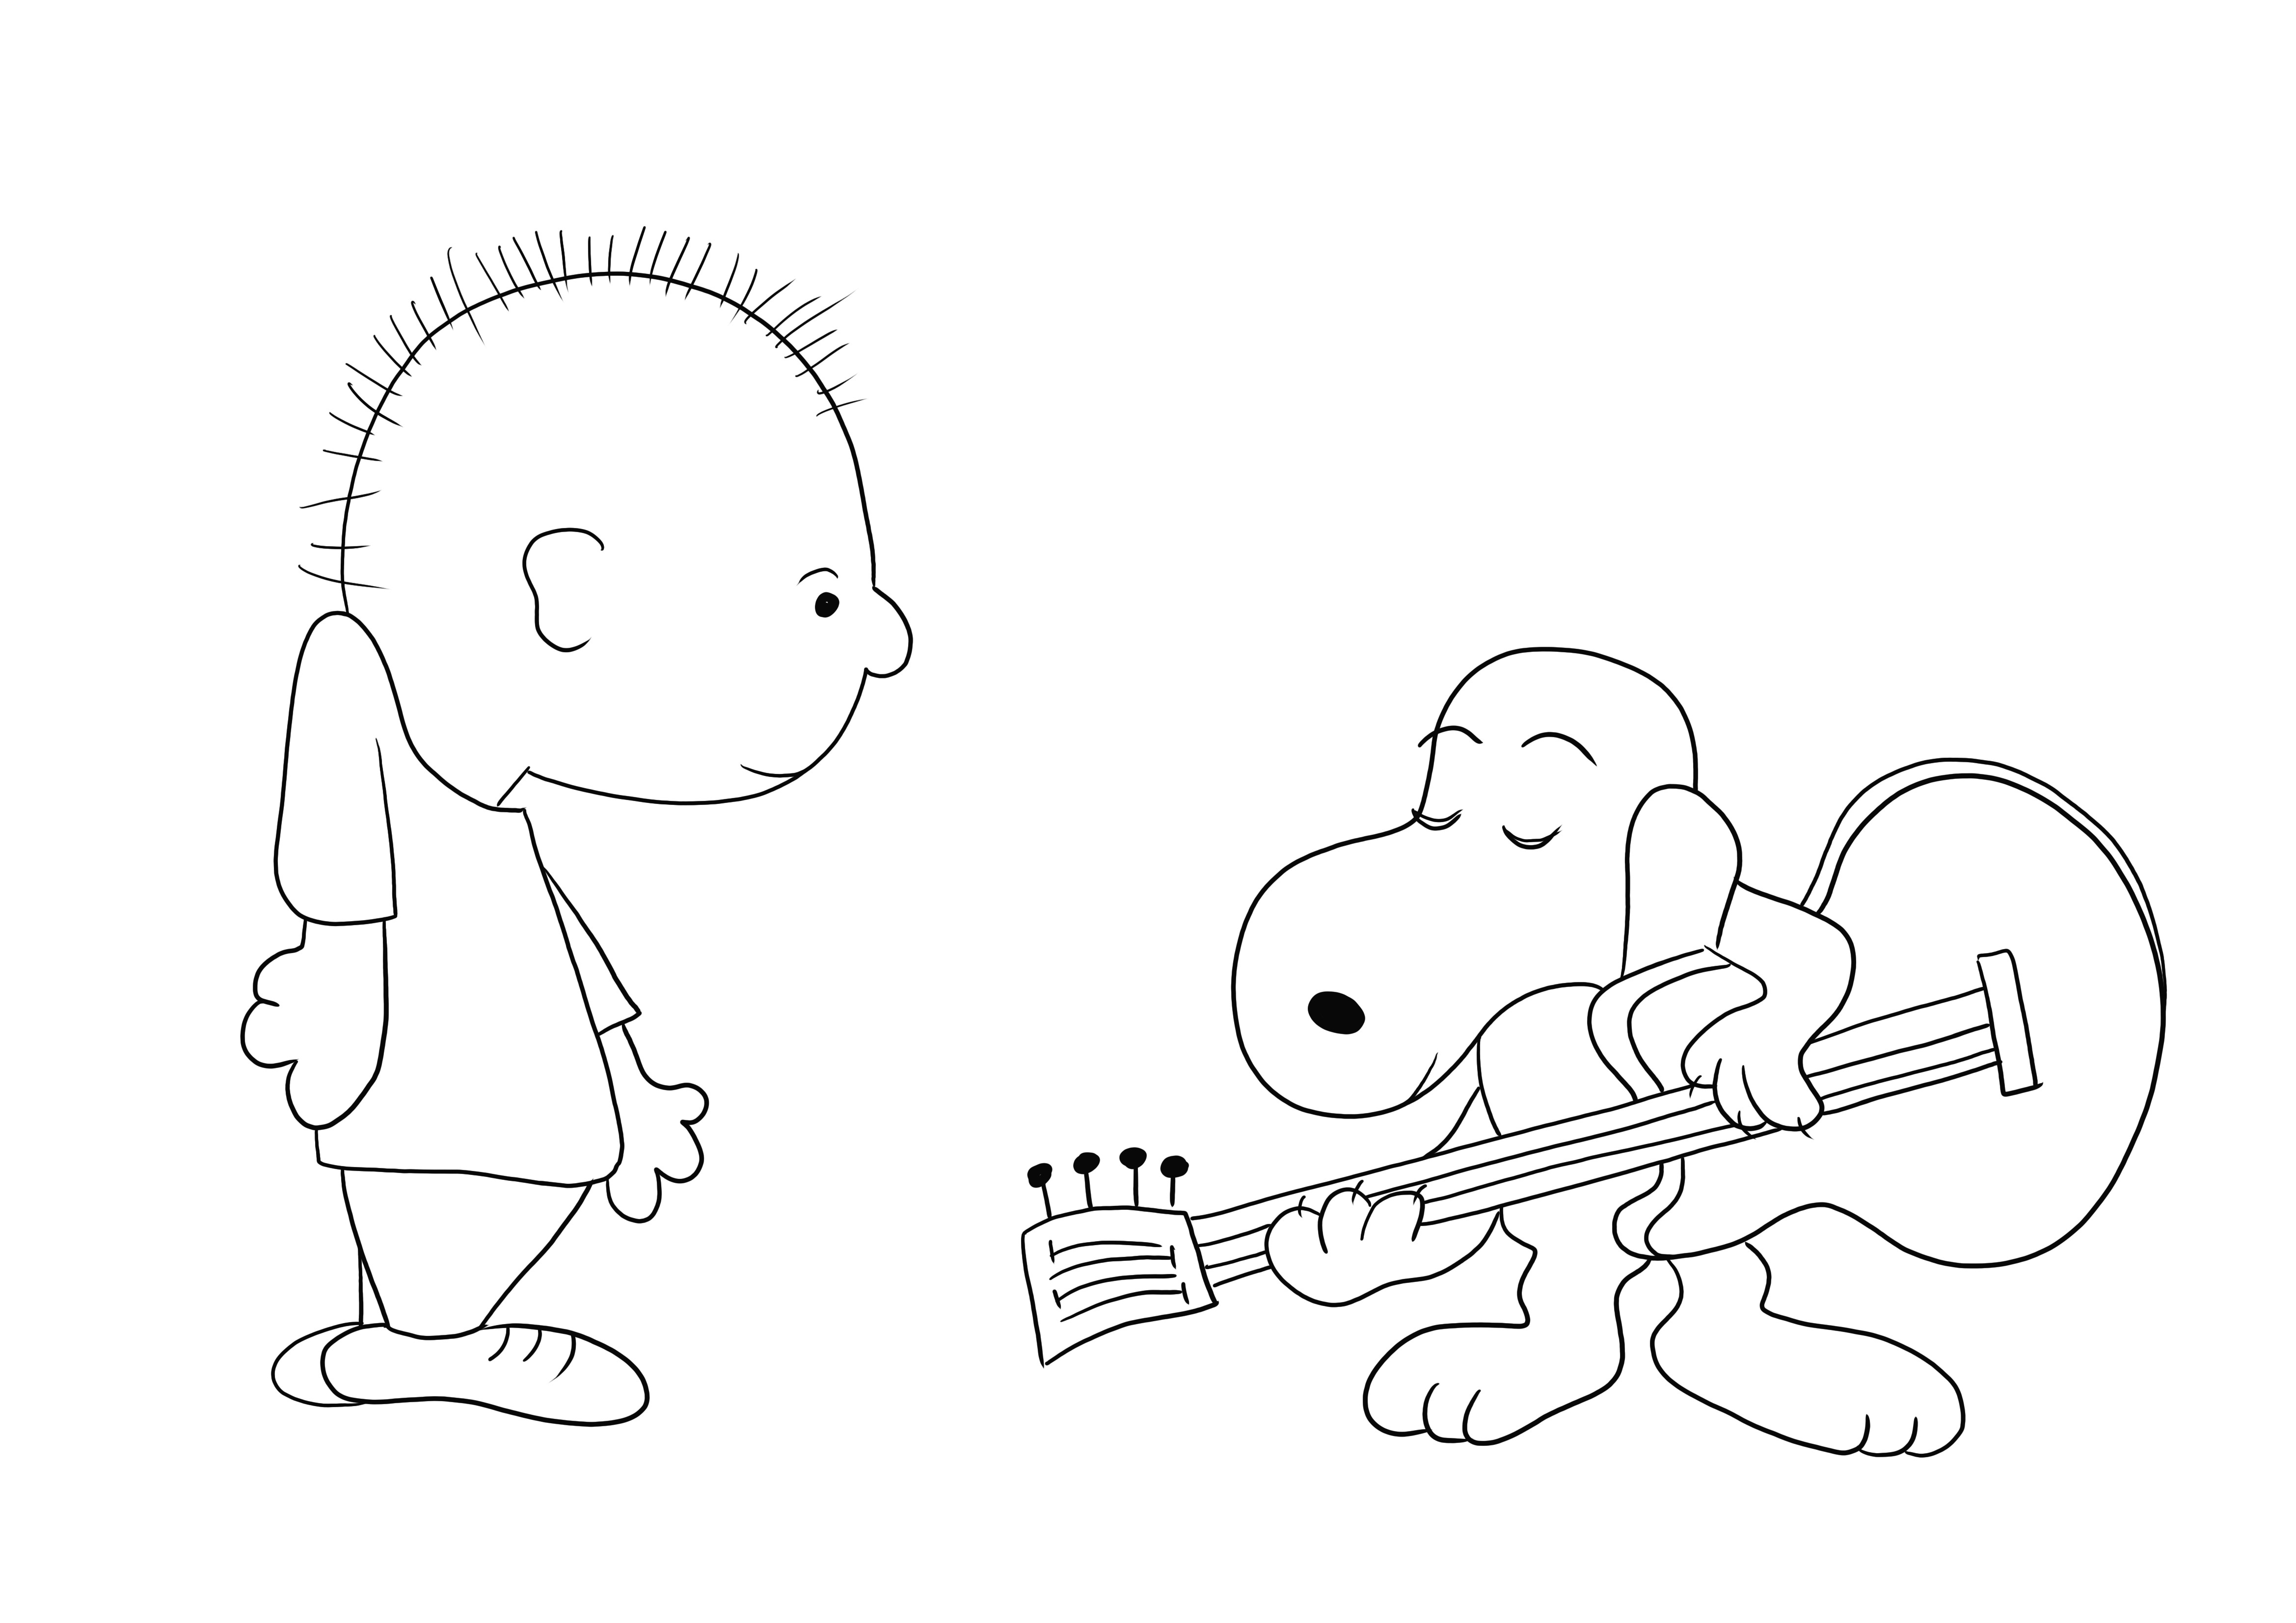 Snoopy che canta una canzone di Natale a Charlie Brown stampa e colora gratis